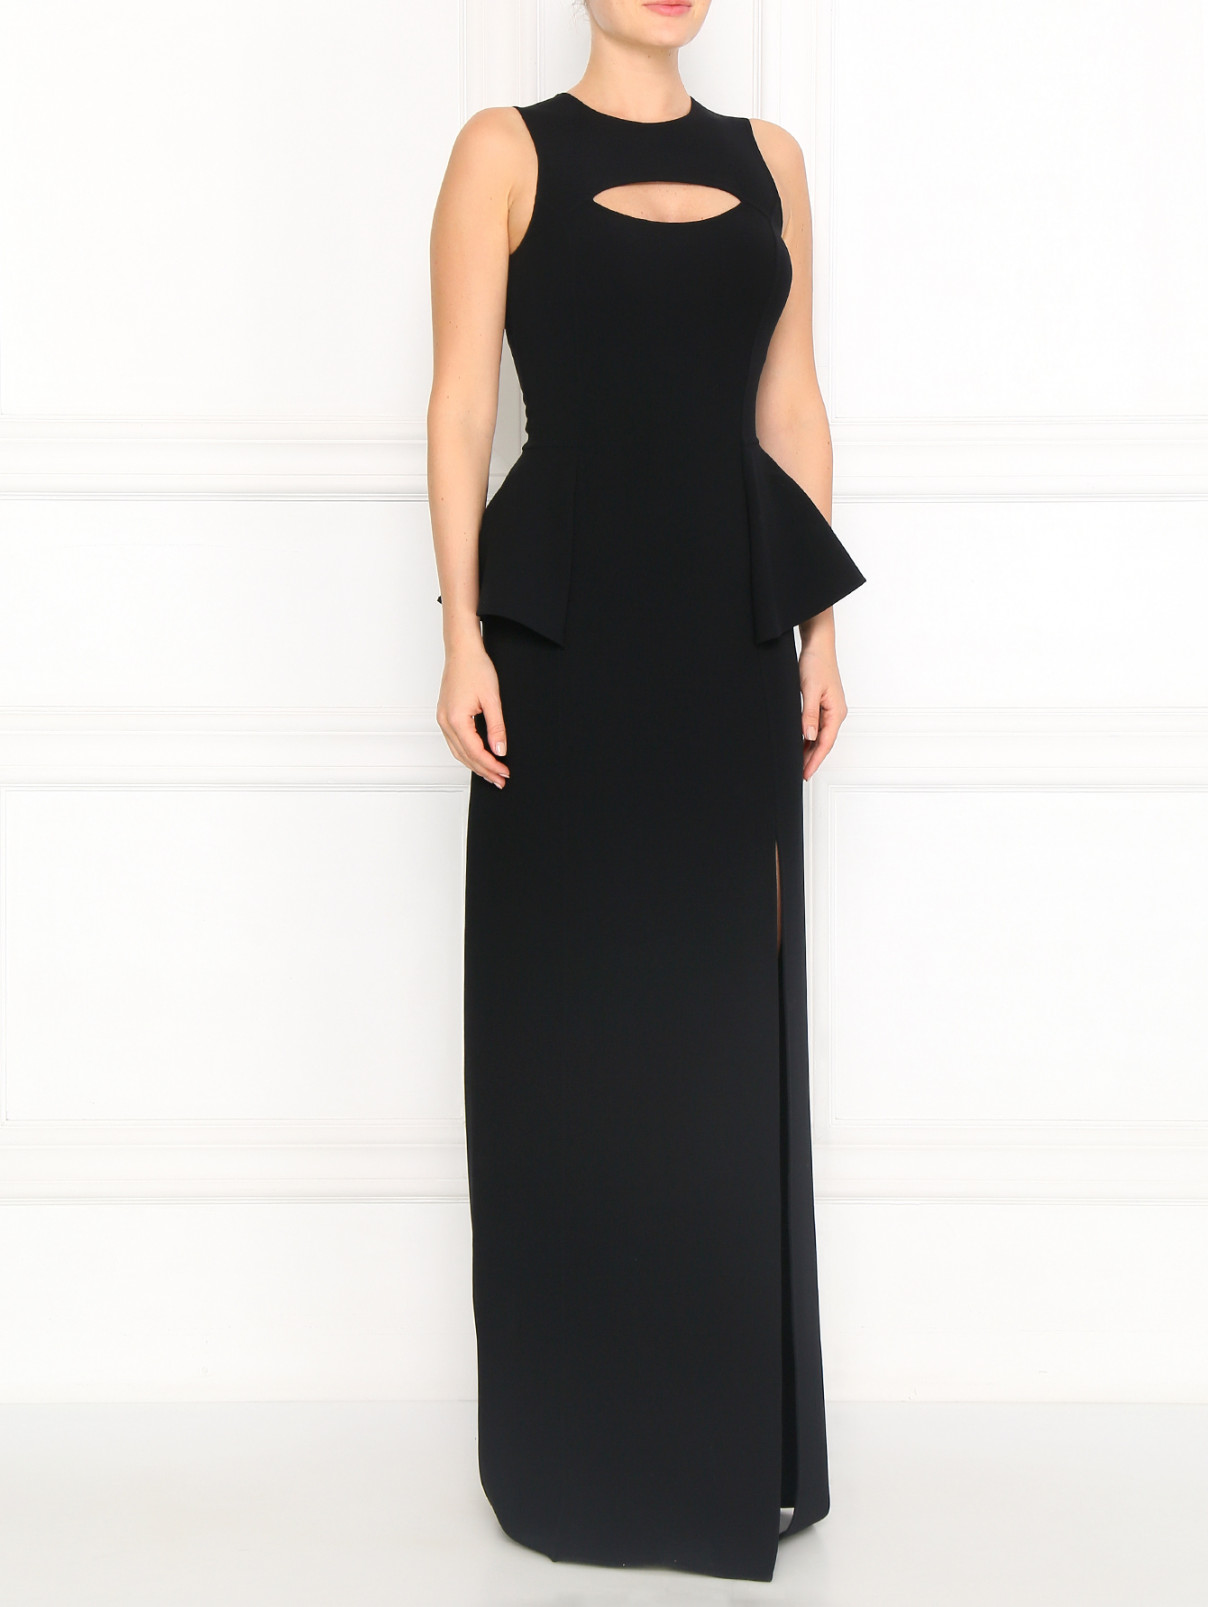 Платье-макси из шерсти с вырезом на спине Michael Kors  –  Модель Общий вид  – Цвет:  Черный